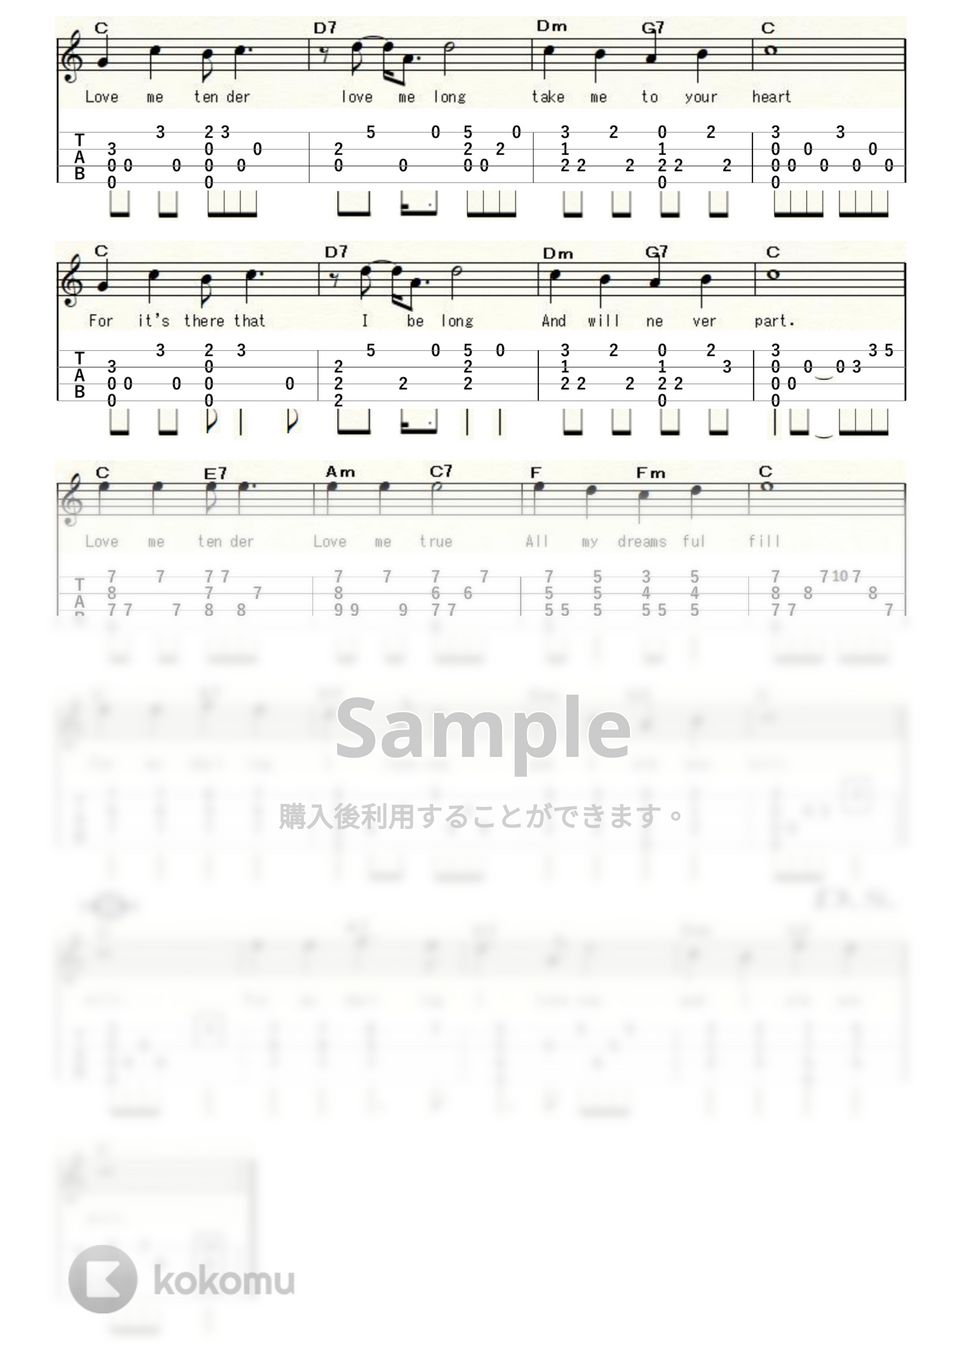 エルヴィス・プレスリー - Love Me Tender (ｳｸﾚﾚｿﾛ/High-G・Low-G/中級) by ukulelepapa